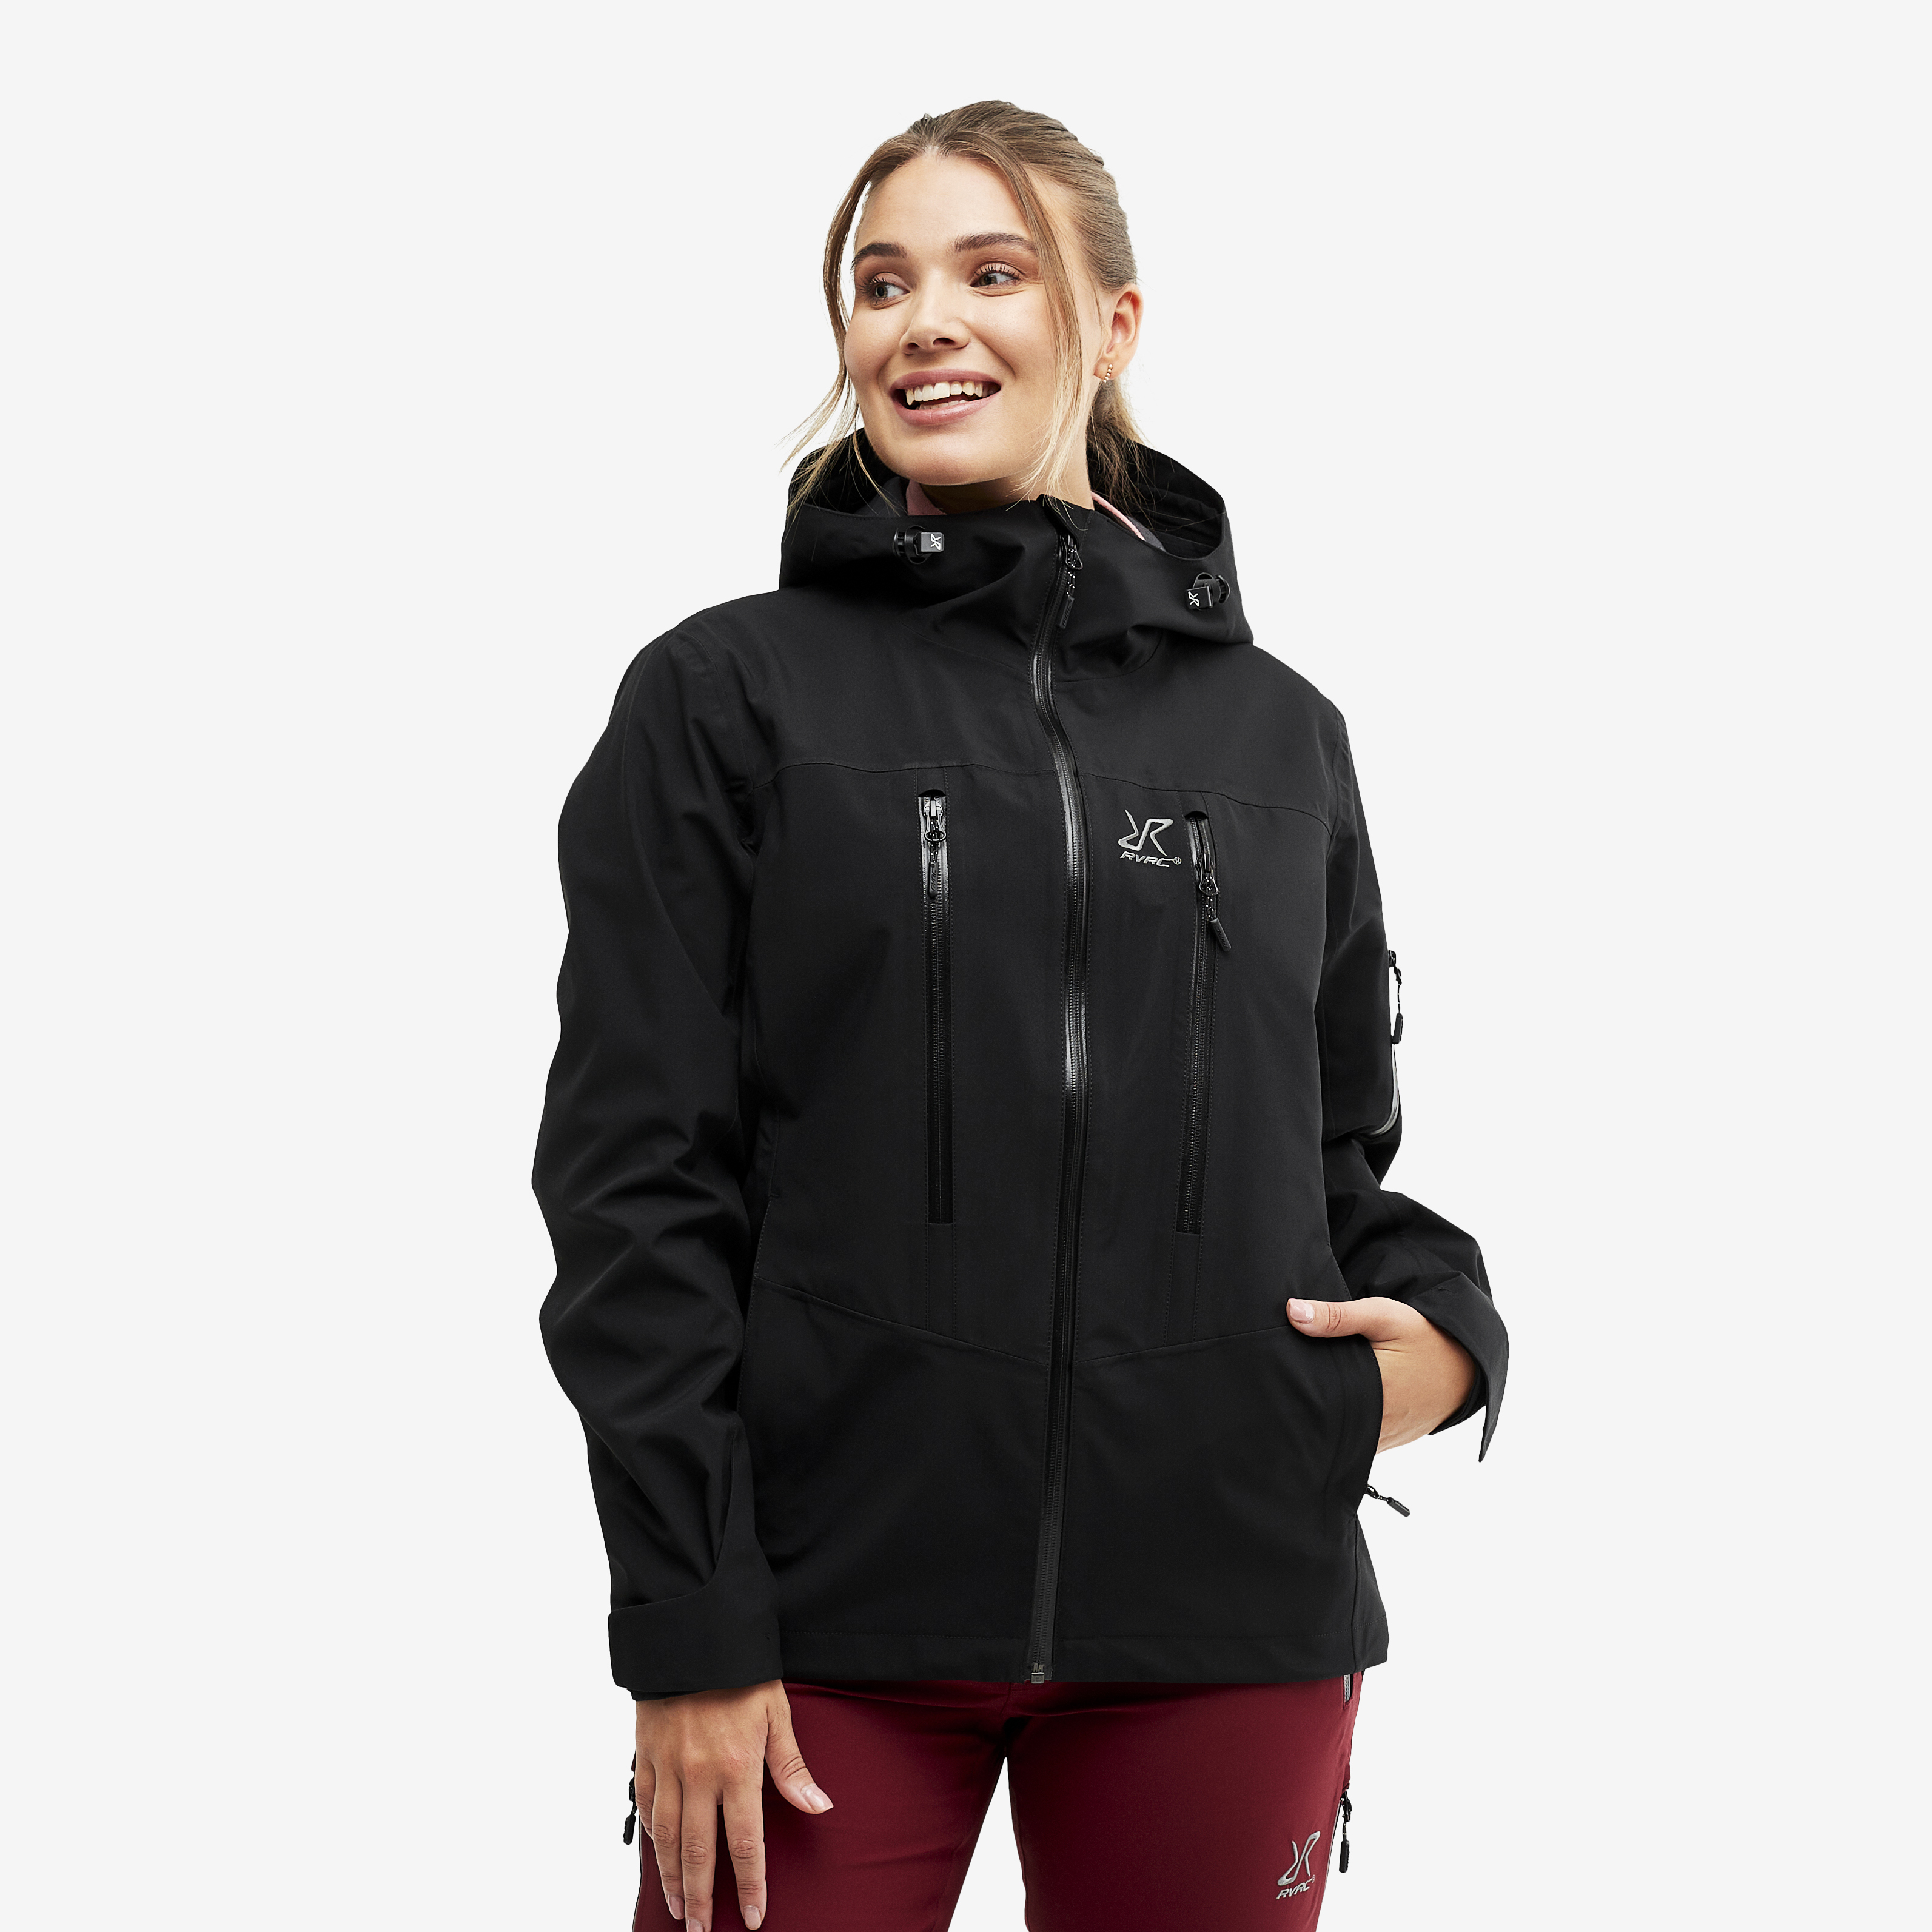 Whisper waterproof jacket for women in black